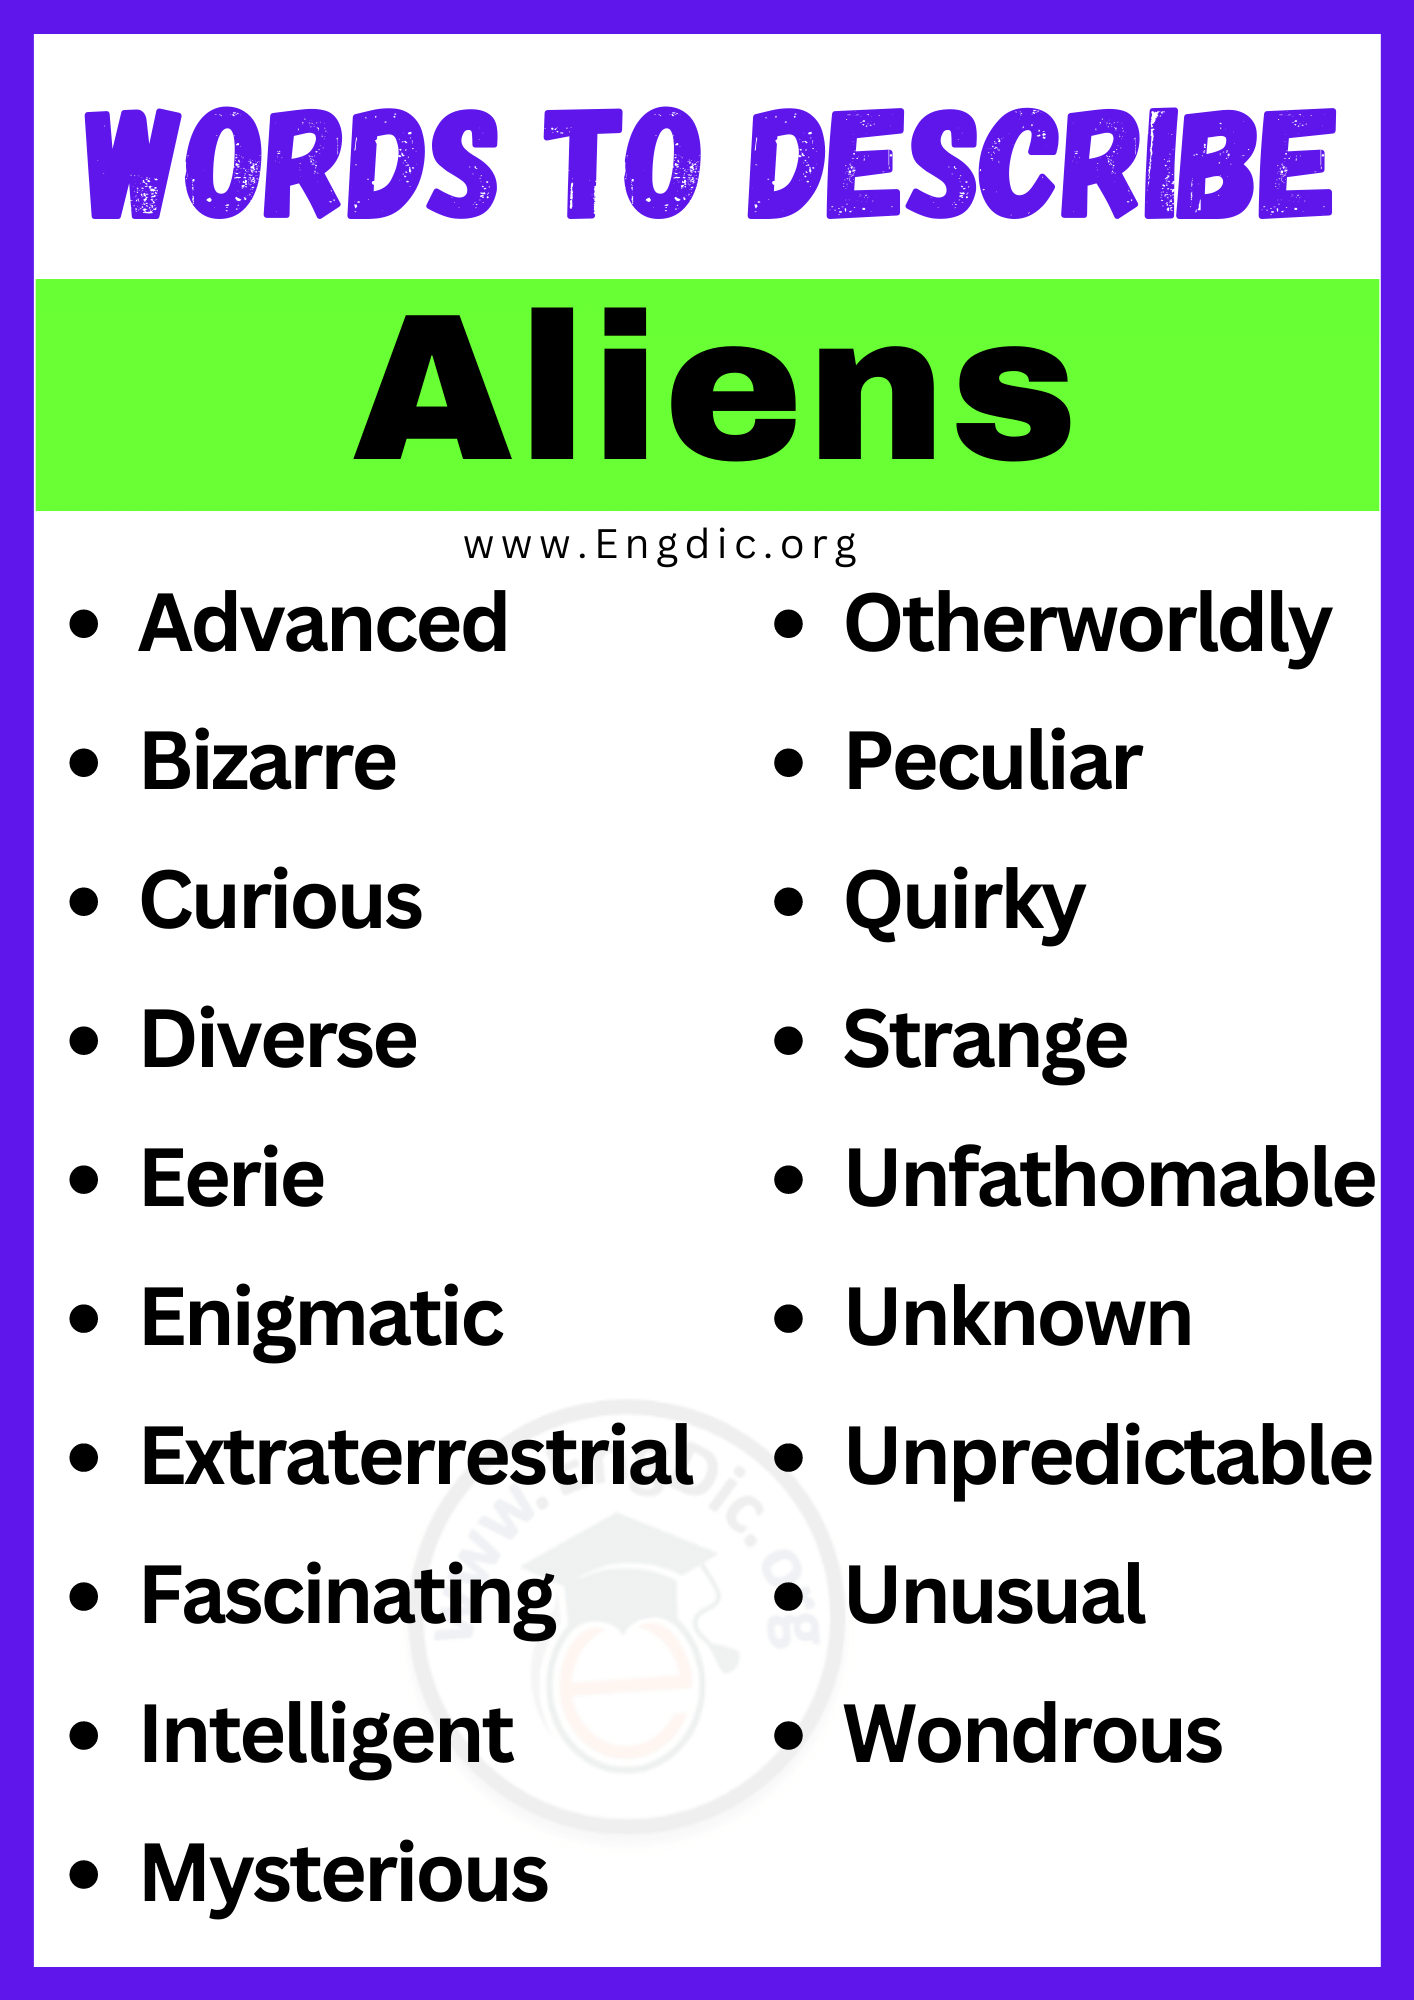 Words to Describe Aliens